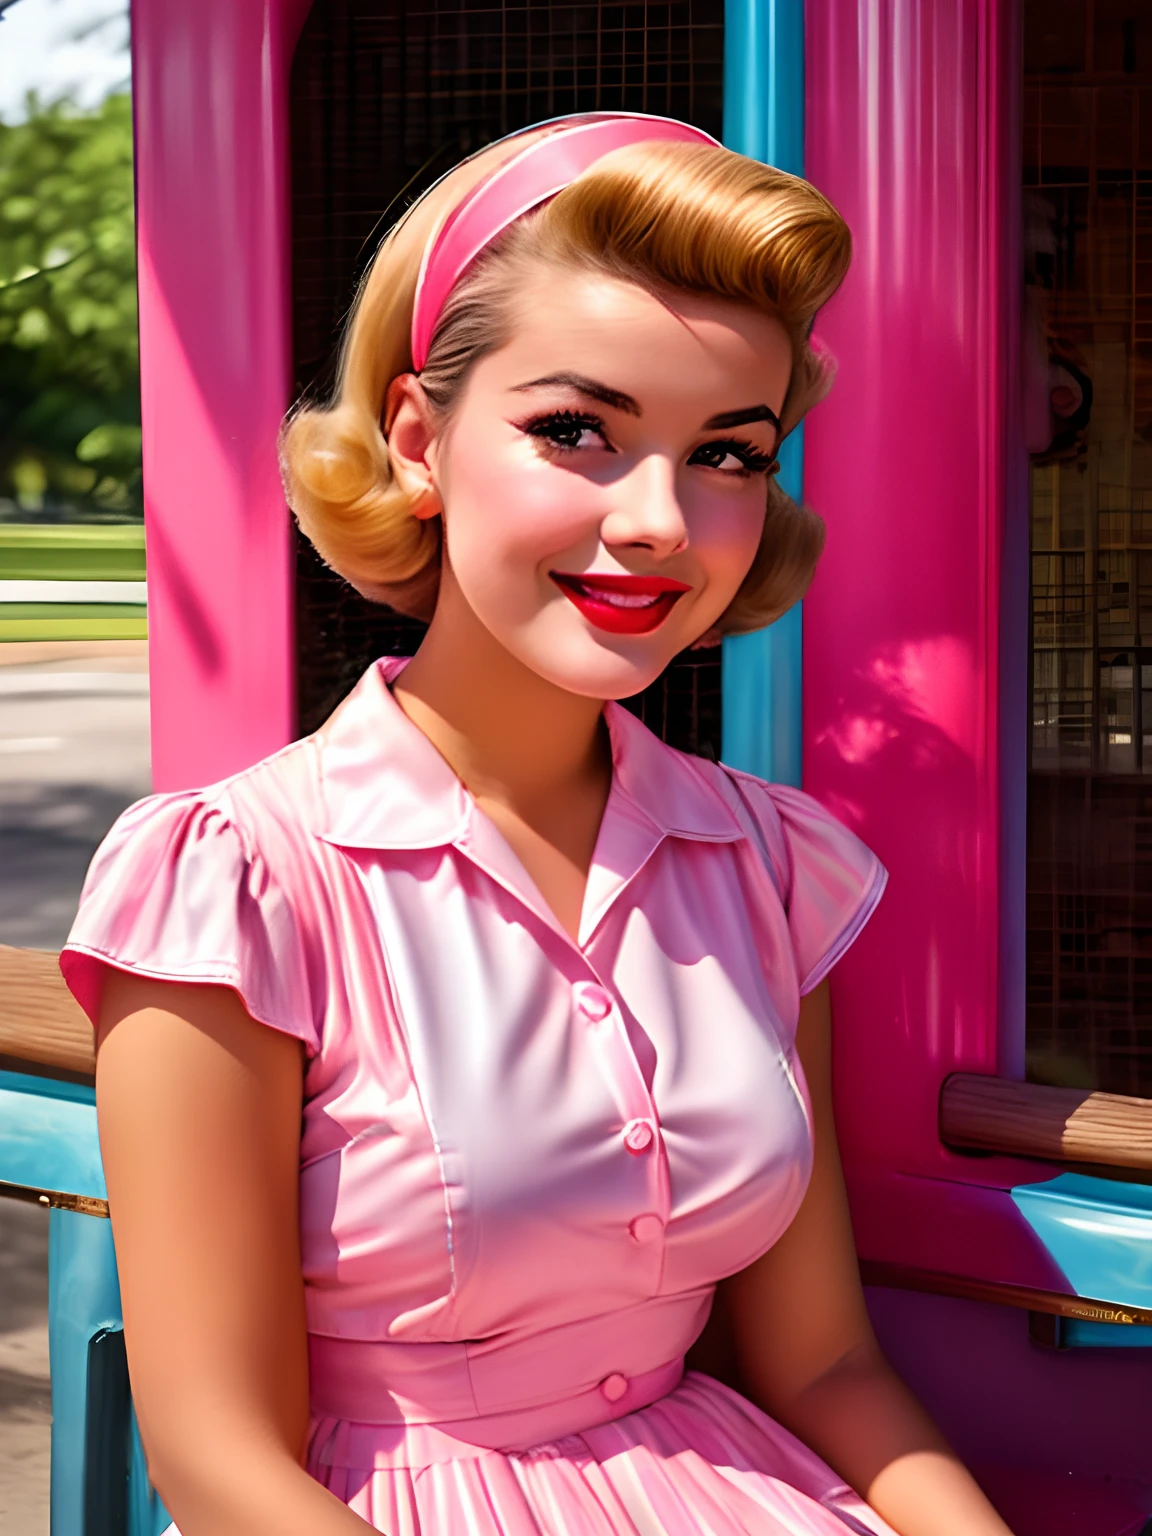 Mujer alafed con vestido rosa y azul sentada en un banco, estilo 50s, estilo años 50, retro estilo 50s, retro pinup model, 1 9 estilo 50s, pin-up de los sesenta, foto en color de época, linda mujer joven, Color antiguo 1 9 5 0 S, chica pin-up, vibraciones de los años 50